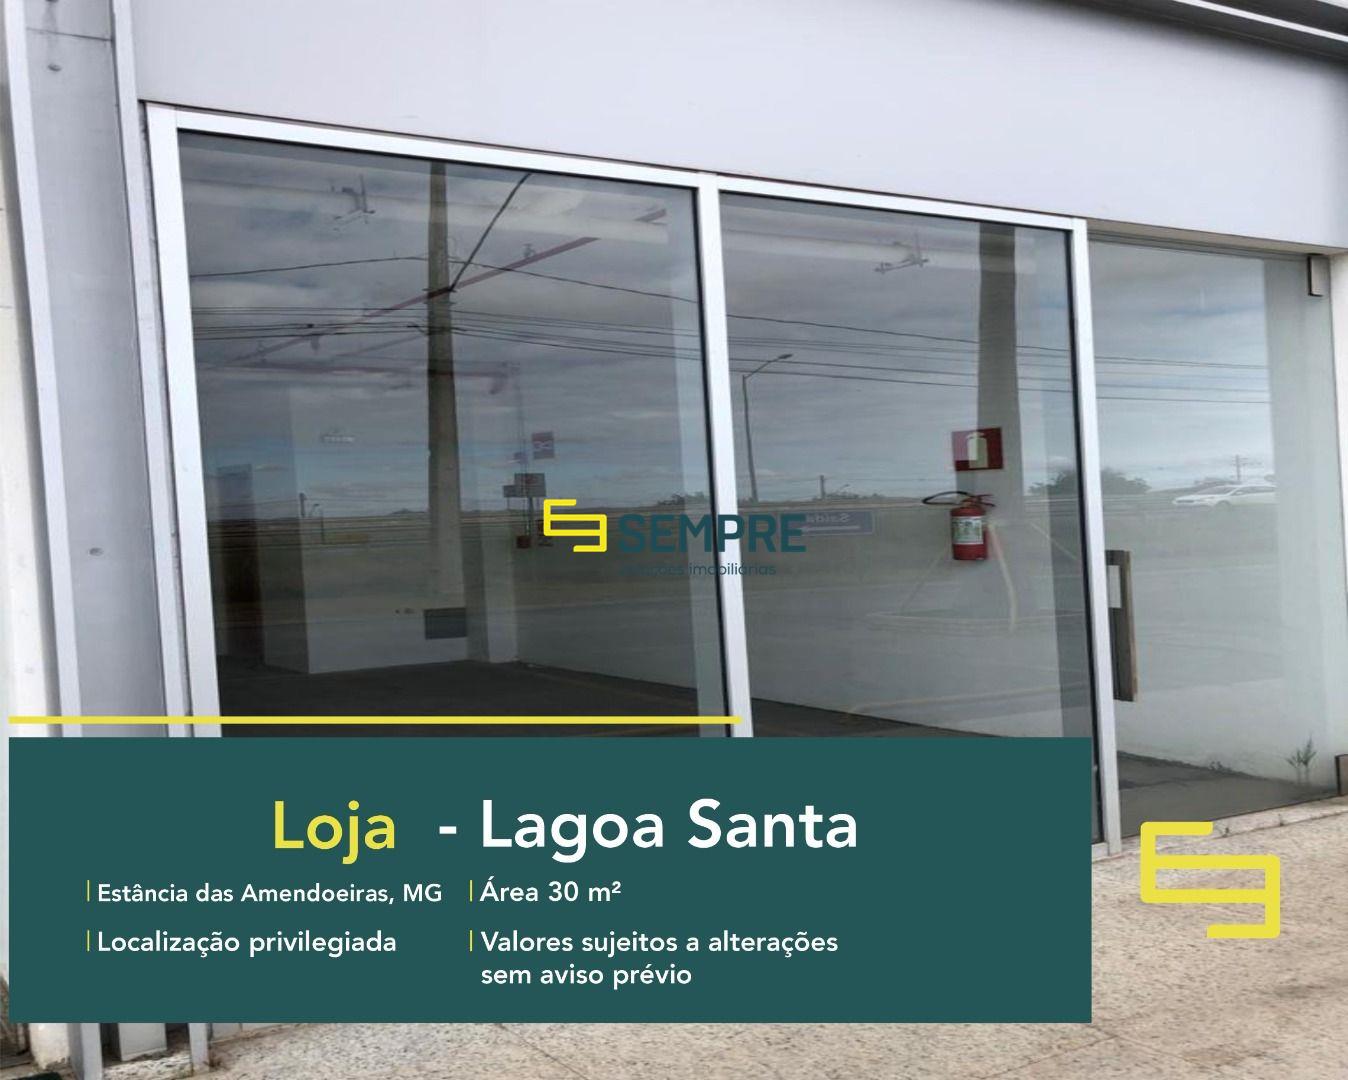 Loja para vender em Lagoa Santa com excelente localização. O estabelecimento comercial para alugar, conta sobretudo, com área de 30 m².